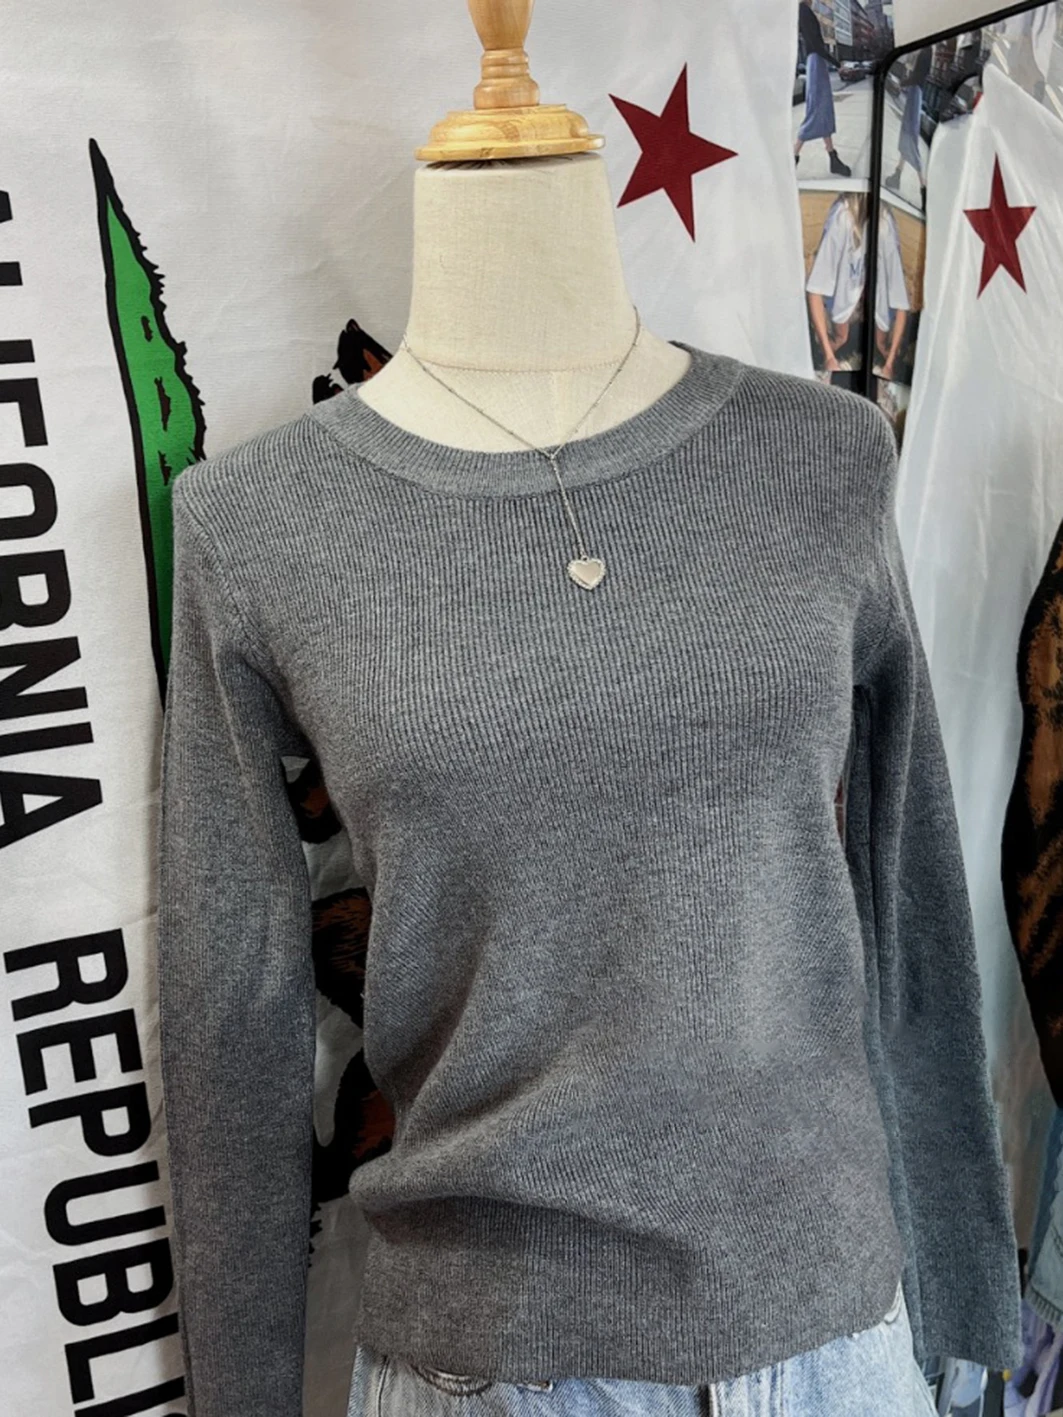 Grau gestrickt Basic Slim Sweater Frau Herbst Rundhals ausschnitt Langarm Pullover Top für Damen bekleidung lässig einfache Baumwolle Pullover